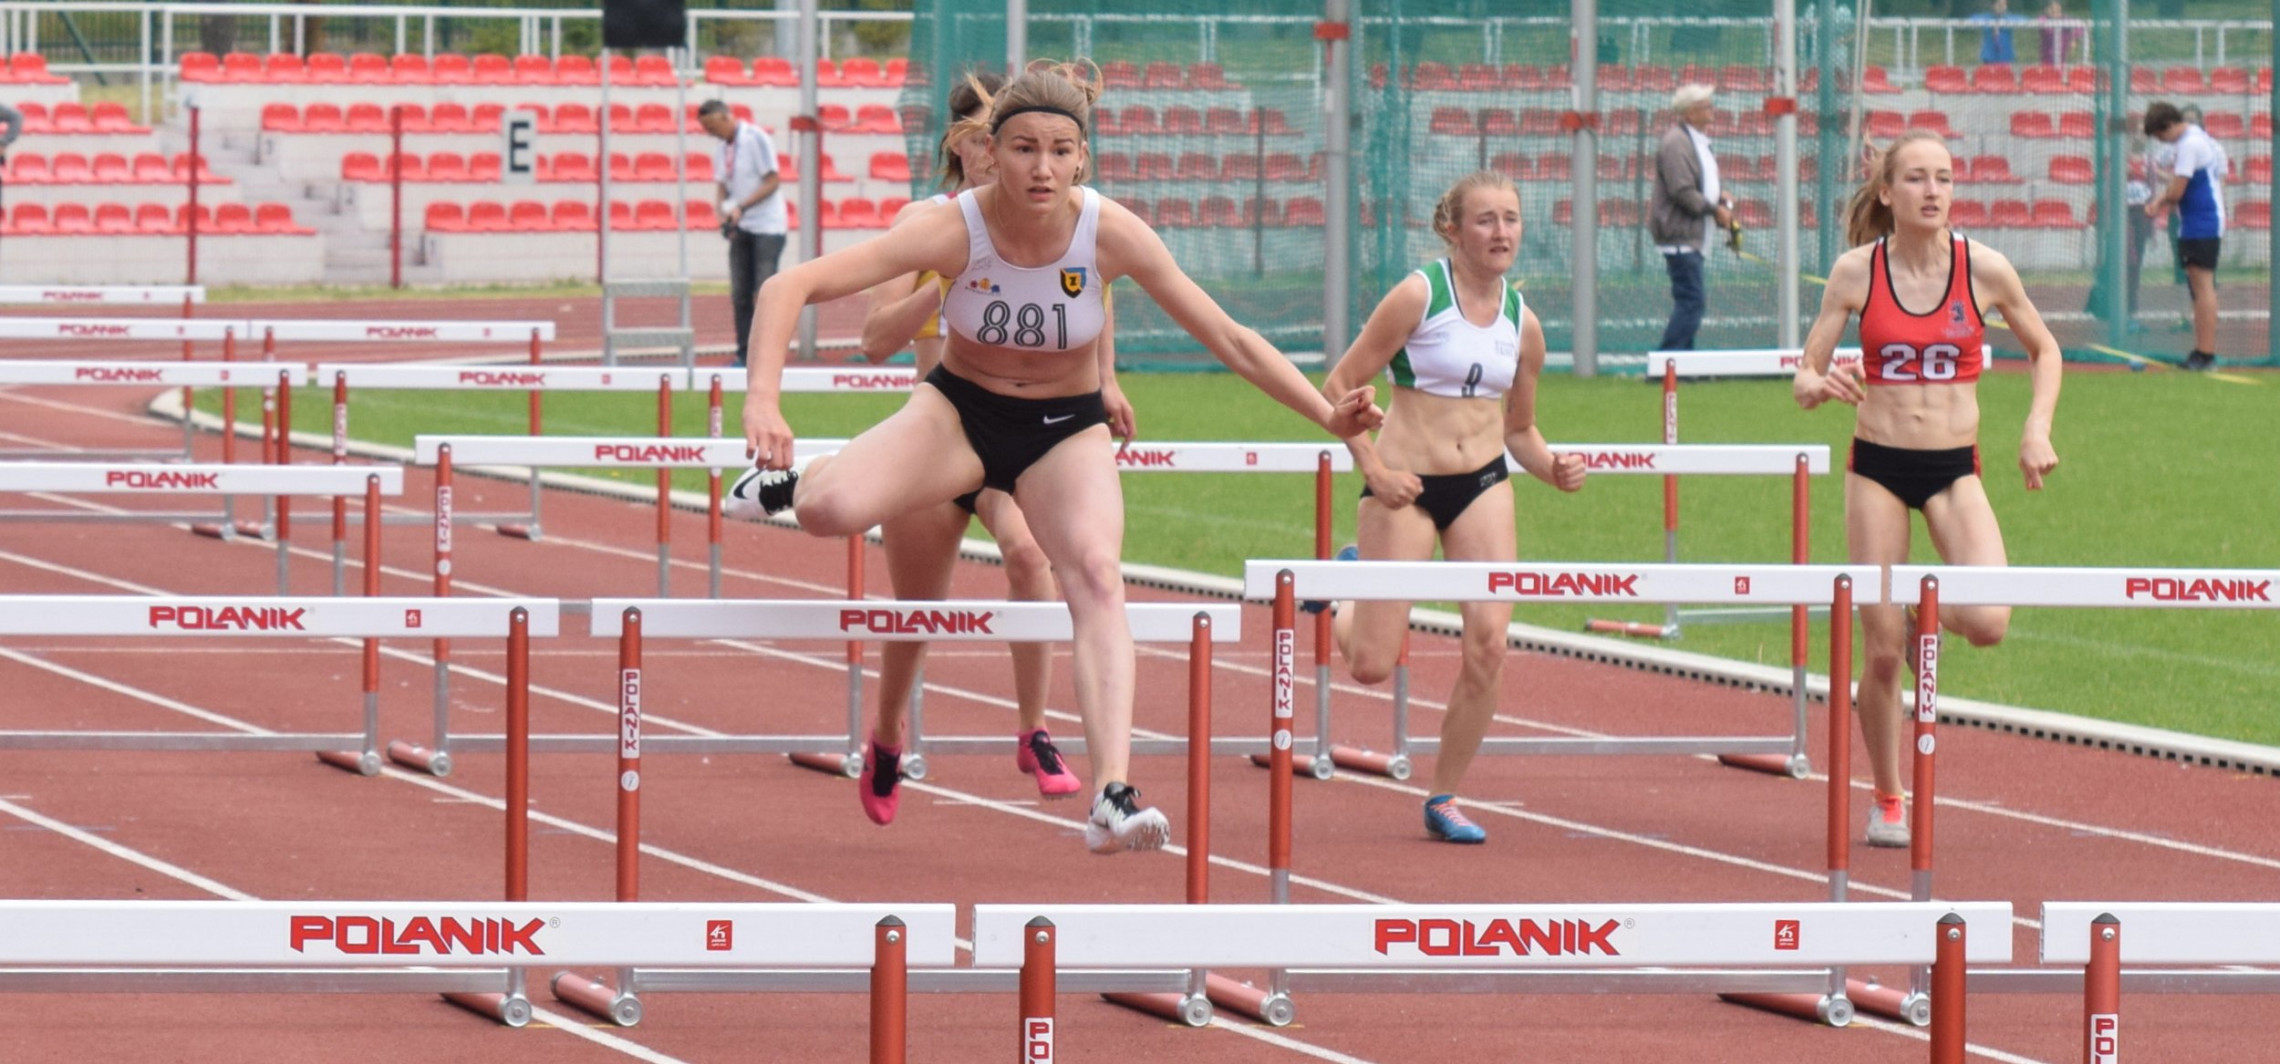 Inowrocław - Ada Sułek zdobyła srebro w Belgradzie. W 2016 roku startowała w Inowrocławiu